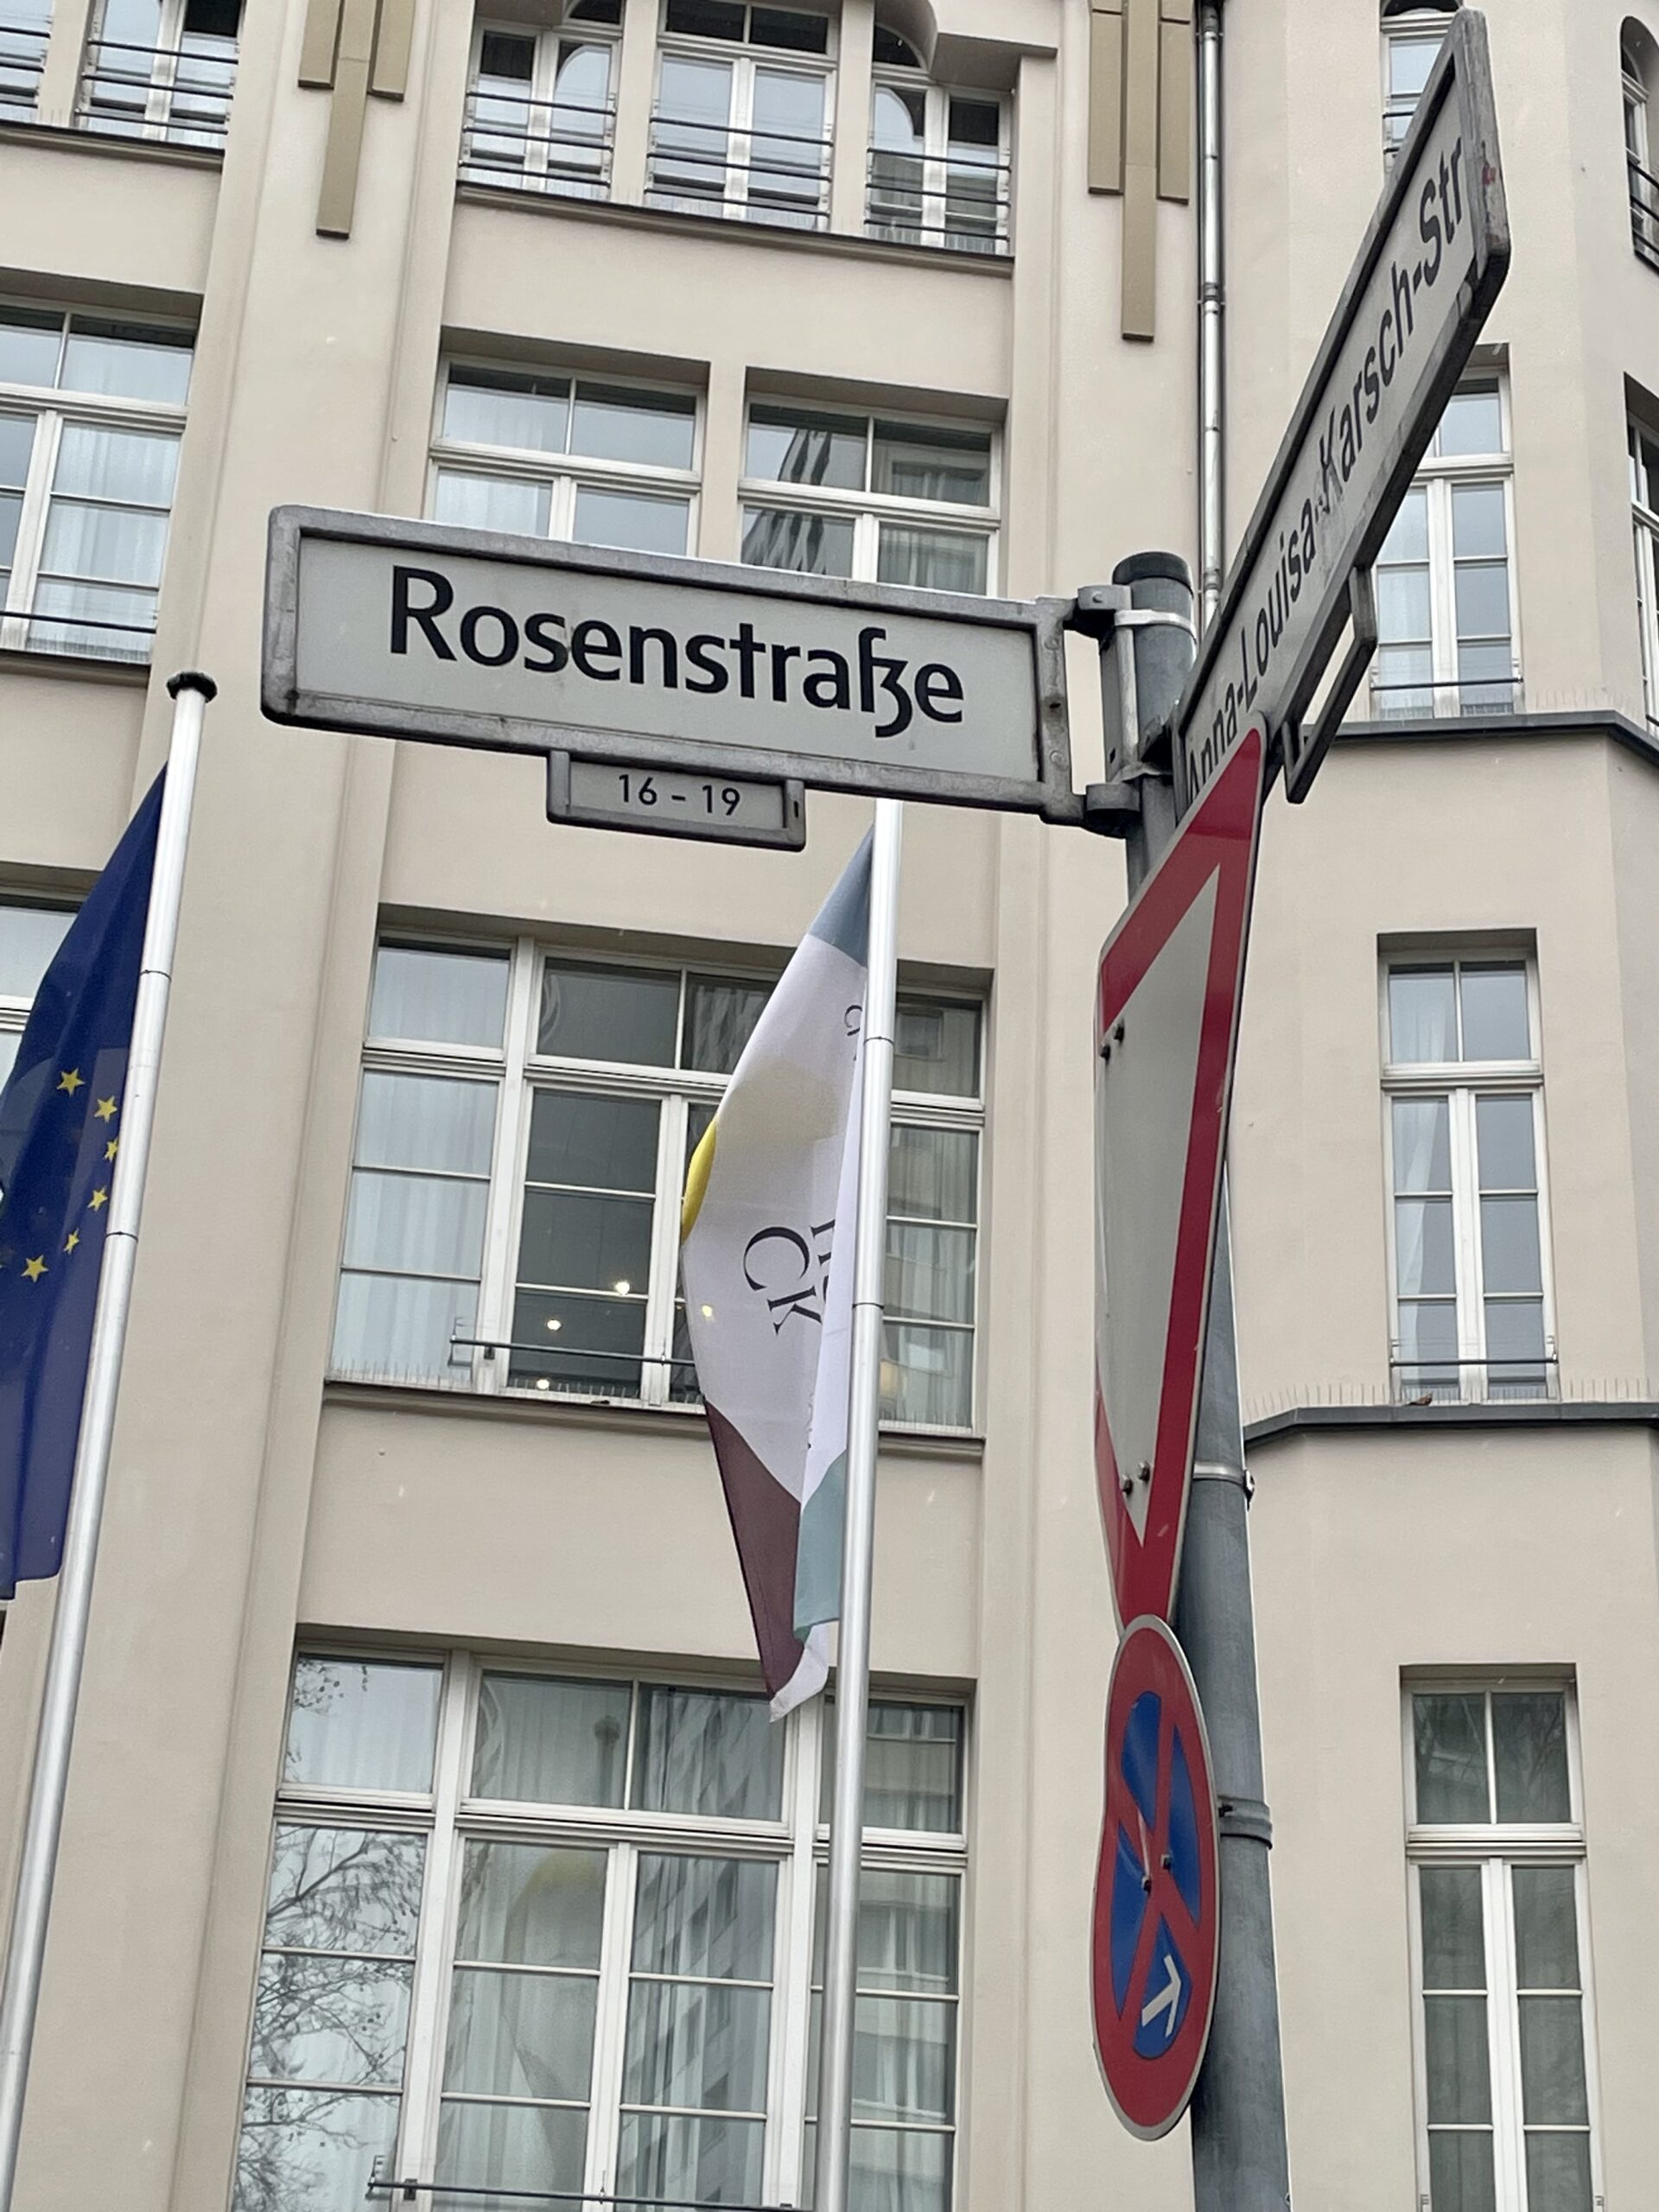 Vor einem beigen Gebäude mit großen Fenstern steht ein Mast. Daran sind Verkehrs- und Straßenschilder. Auf dem Straßenschild steht: Rosenstraße 16-19.